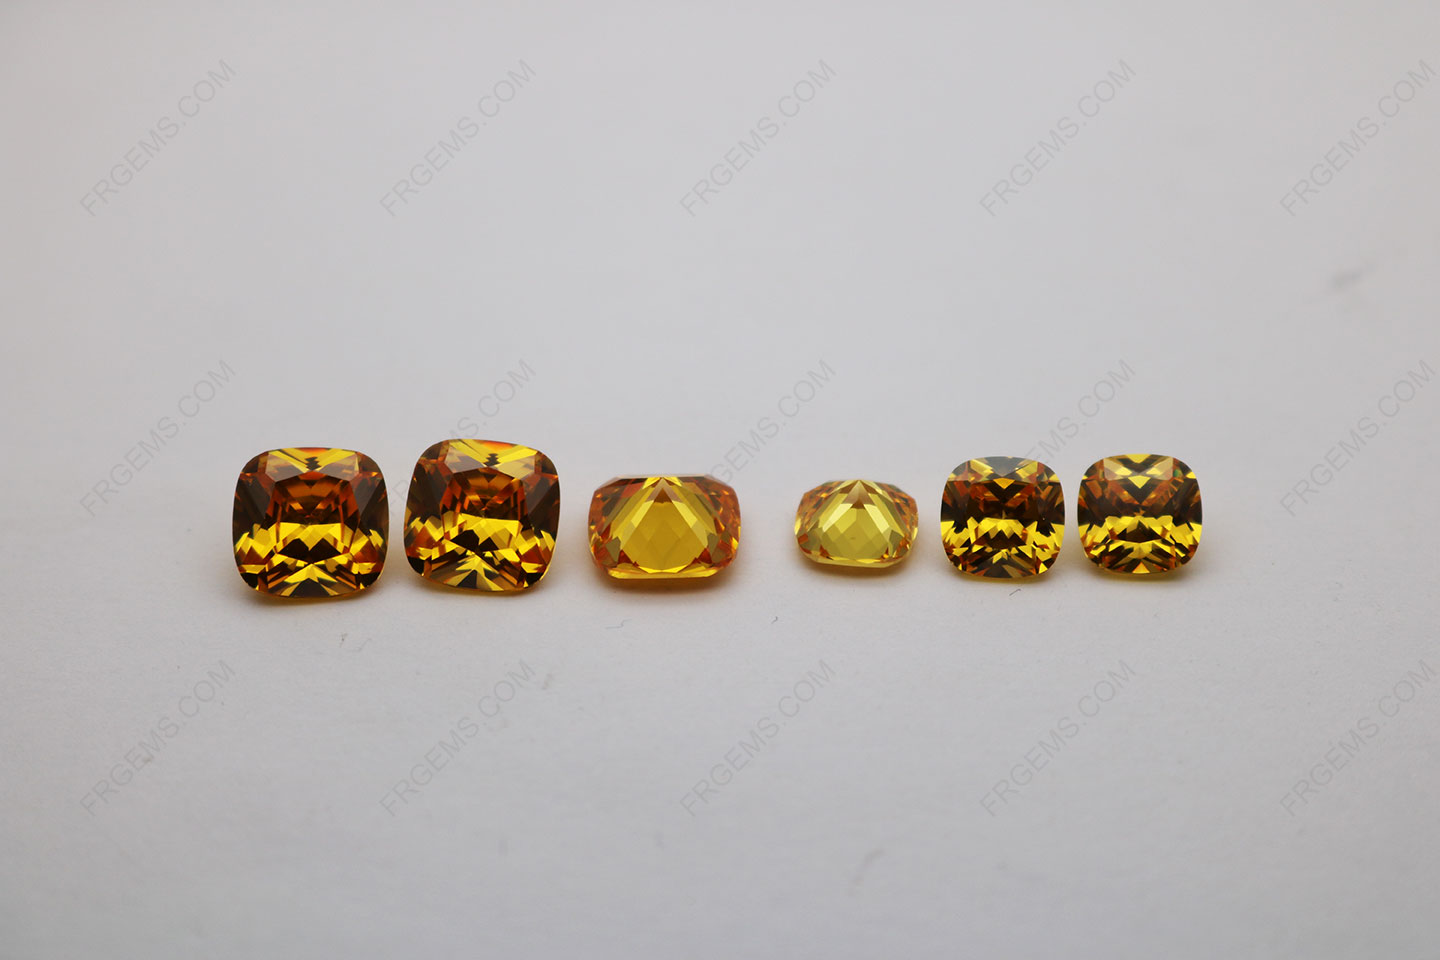 Cubic-zirconia-golden-yellow-dark-color-shade-cushion-cut-10x10mm-vs-8x8mm-gemstones-IMG_5368